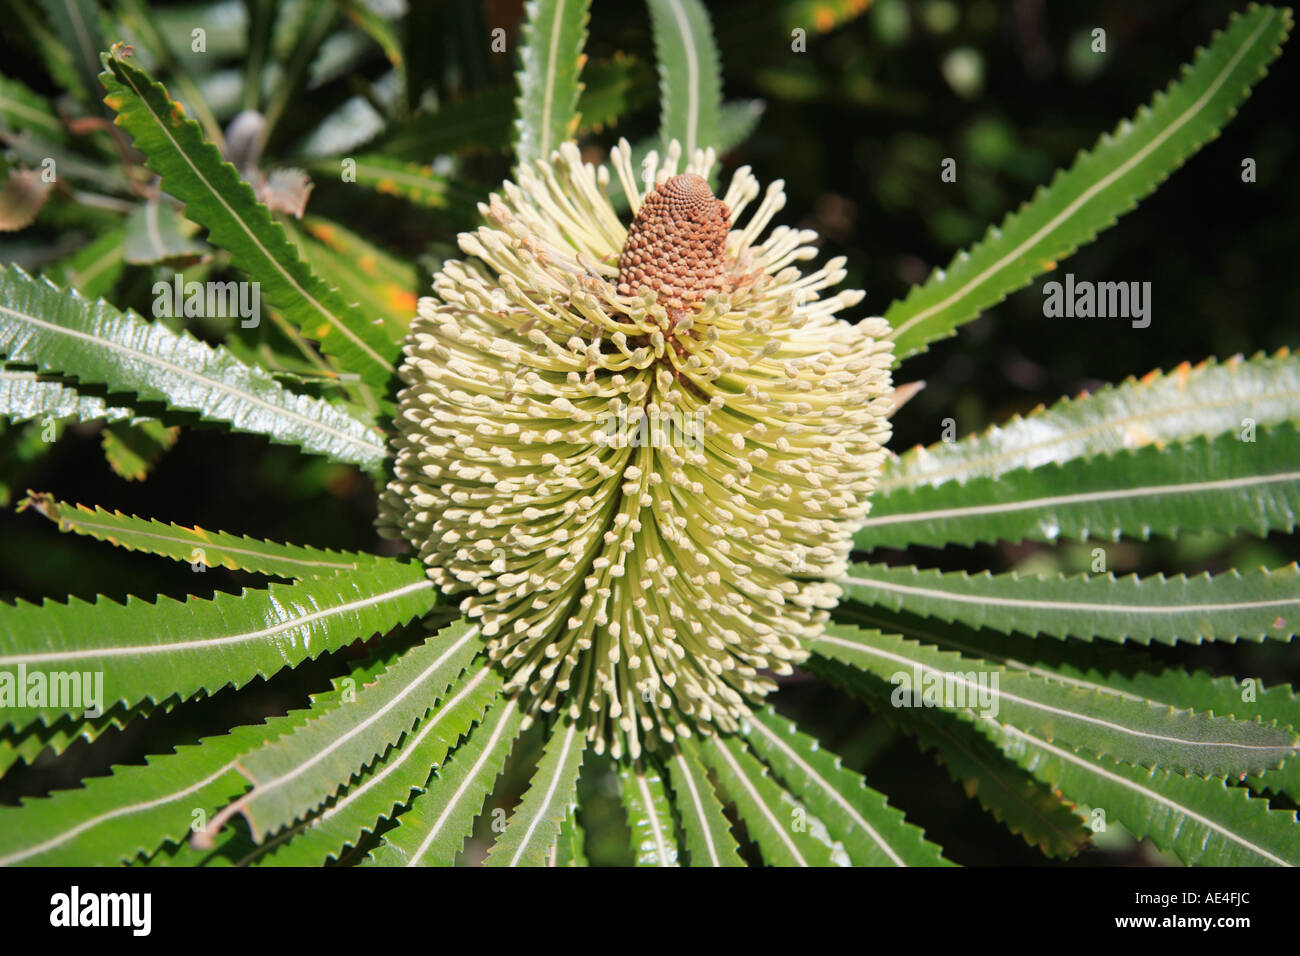 Banksia aemula, famille des PROTEACEAE, arbre cylindrique, de couleur crème, détail de fleurs, de l'Australie Banque D'Images